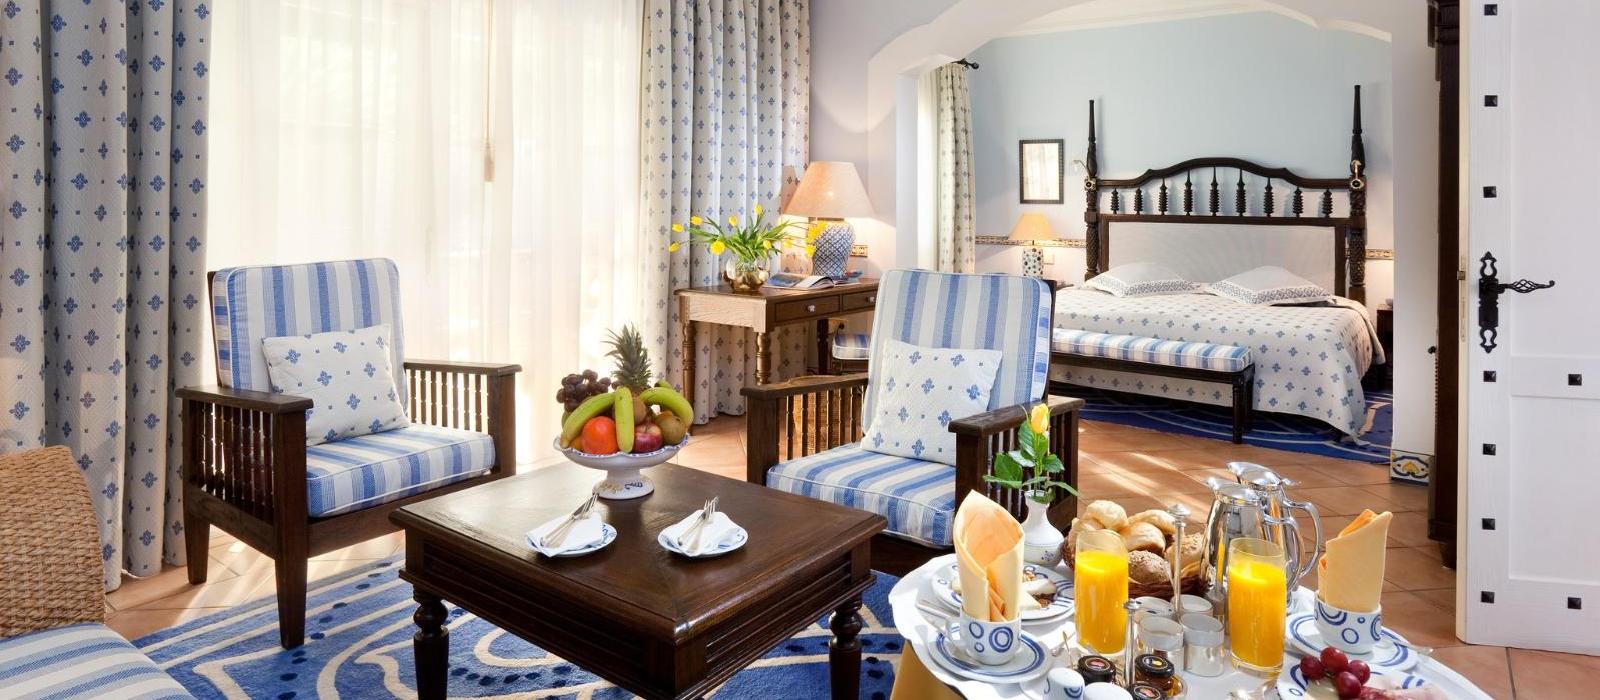 格兰德滨海公馆酒店(Seaside Grand Hotel Residencia) 图片  www.lhw.cn